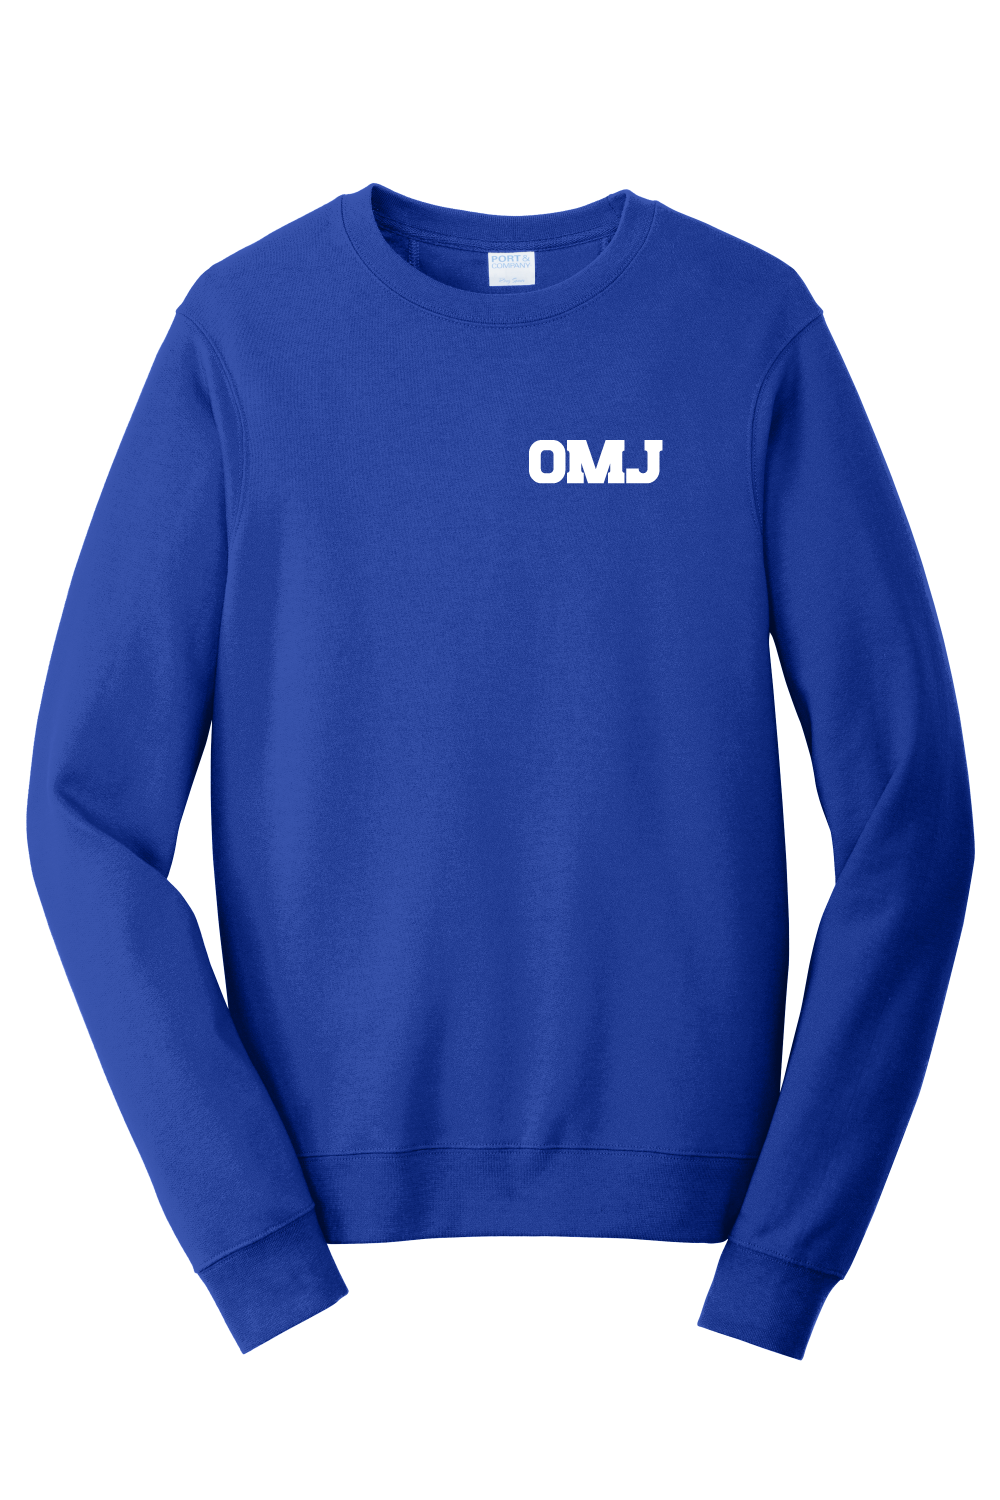 OMJ Crewneck Sweatshirt